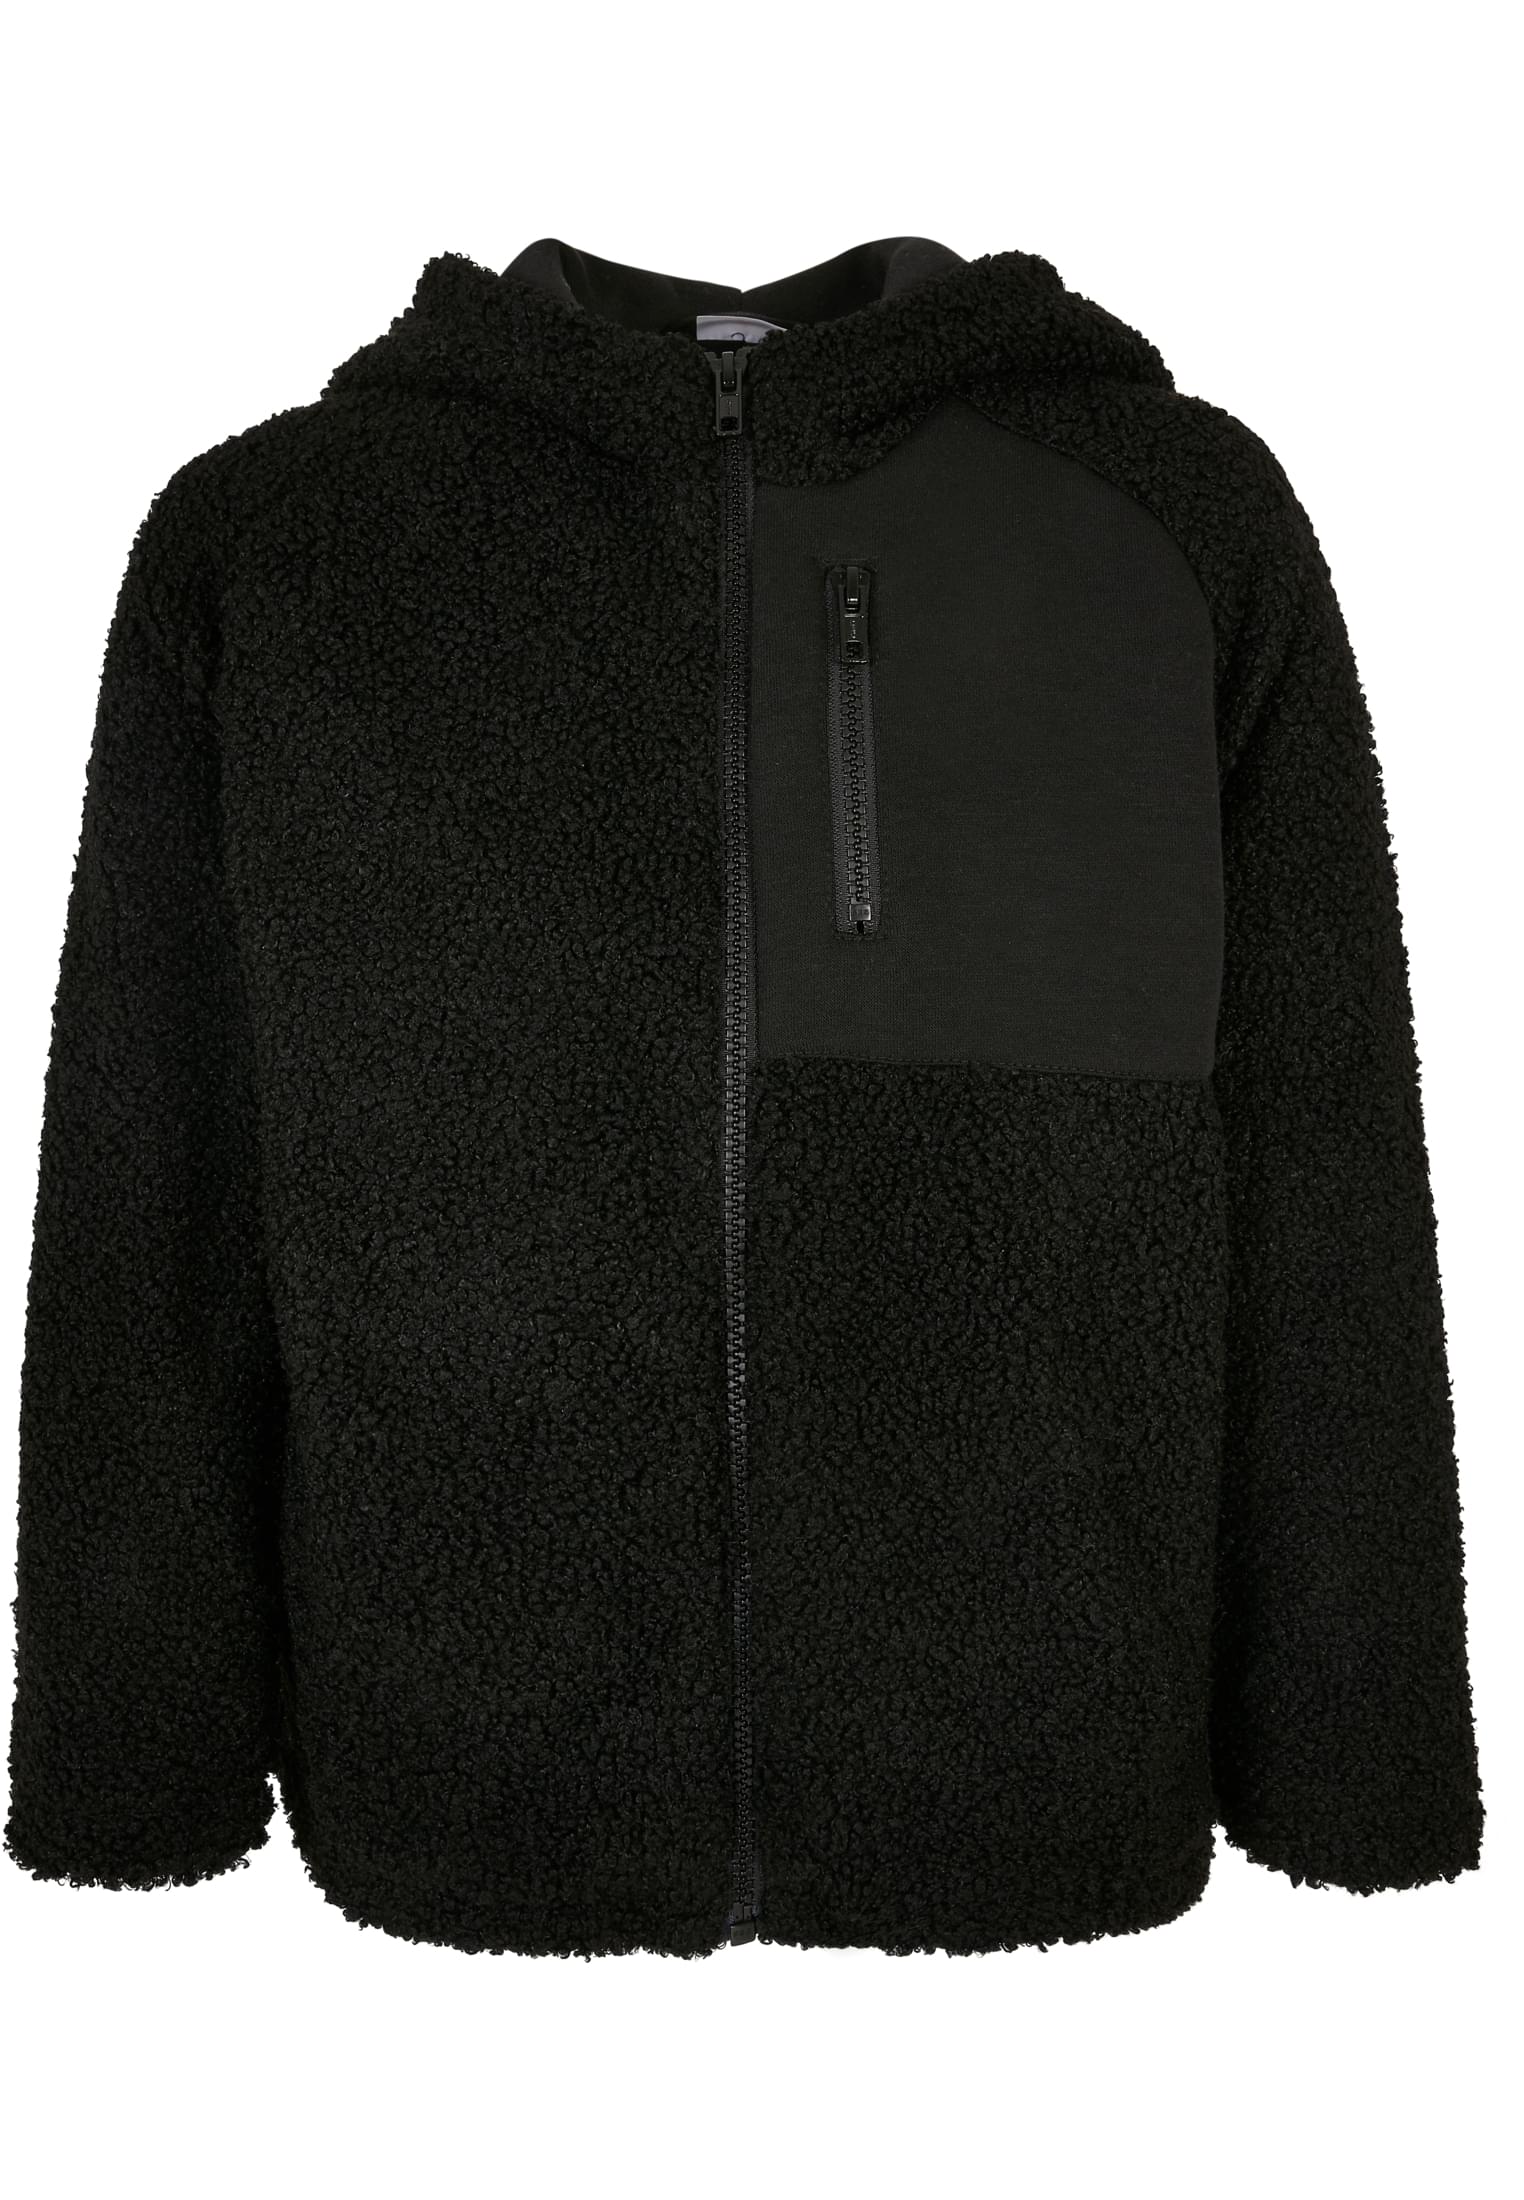 Sherpa Boys' Zip-Up Hooded Jacket Black